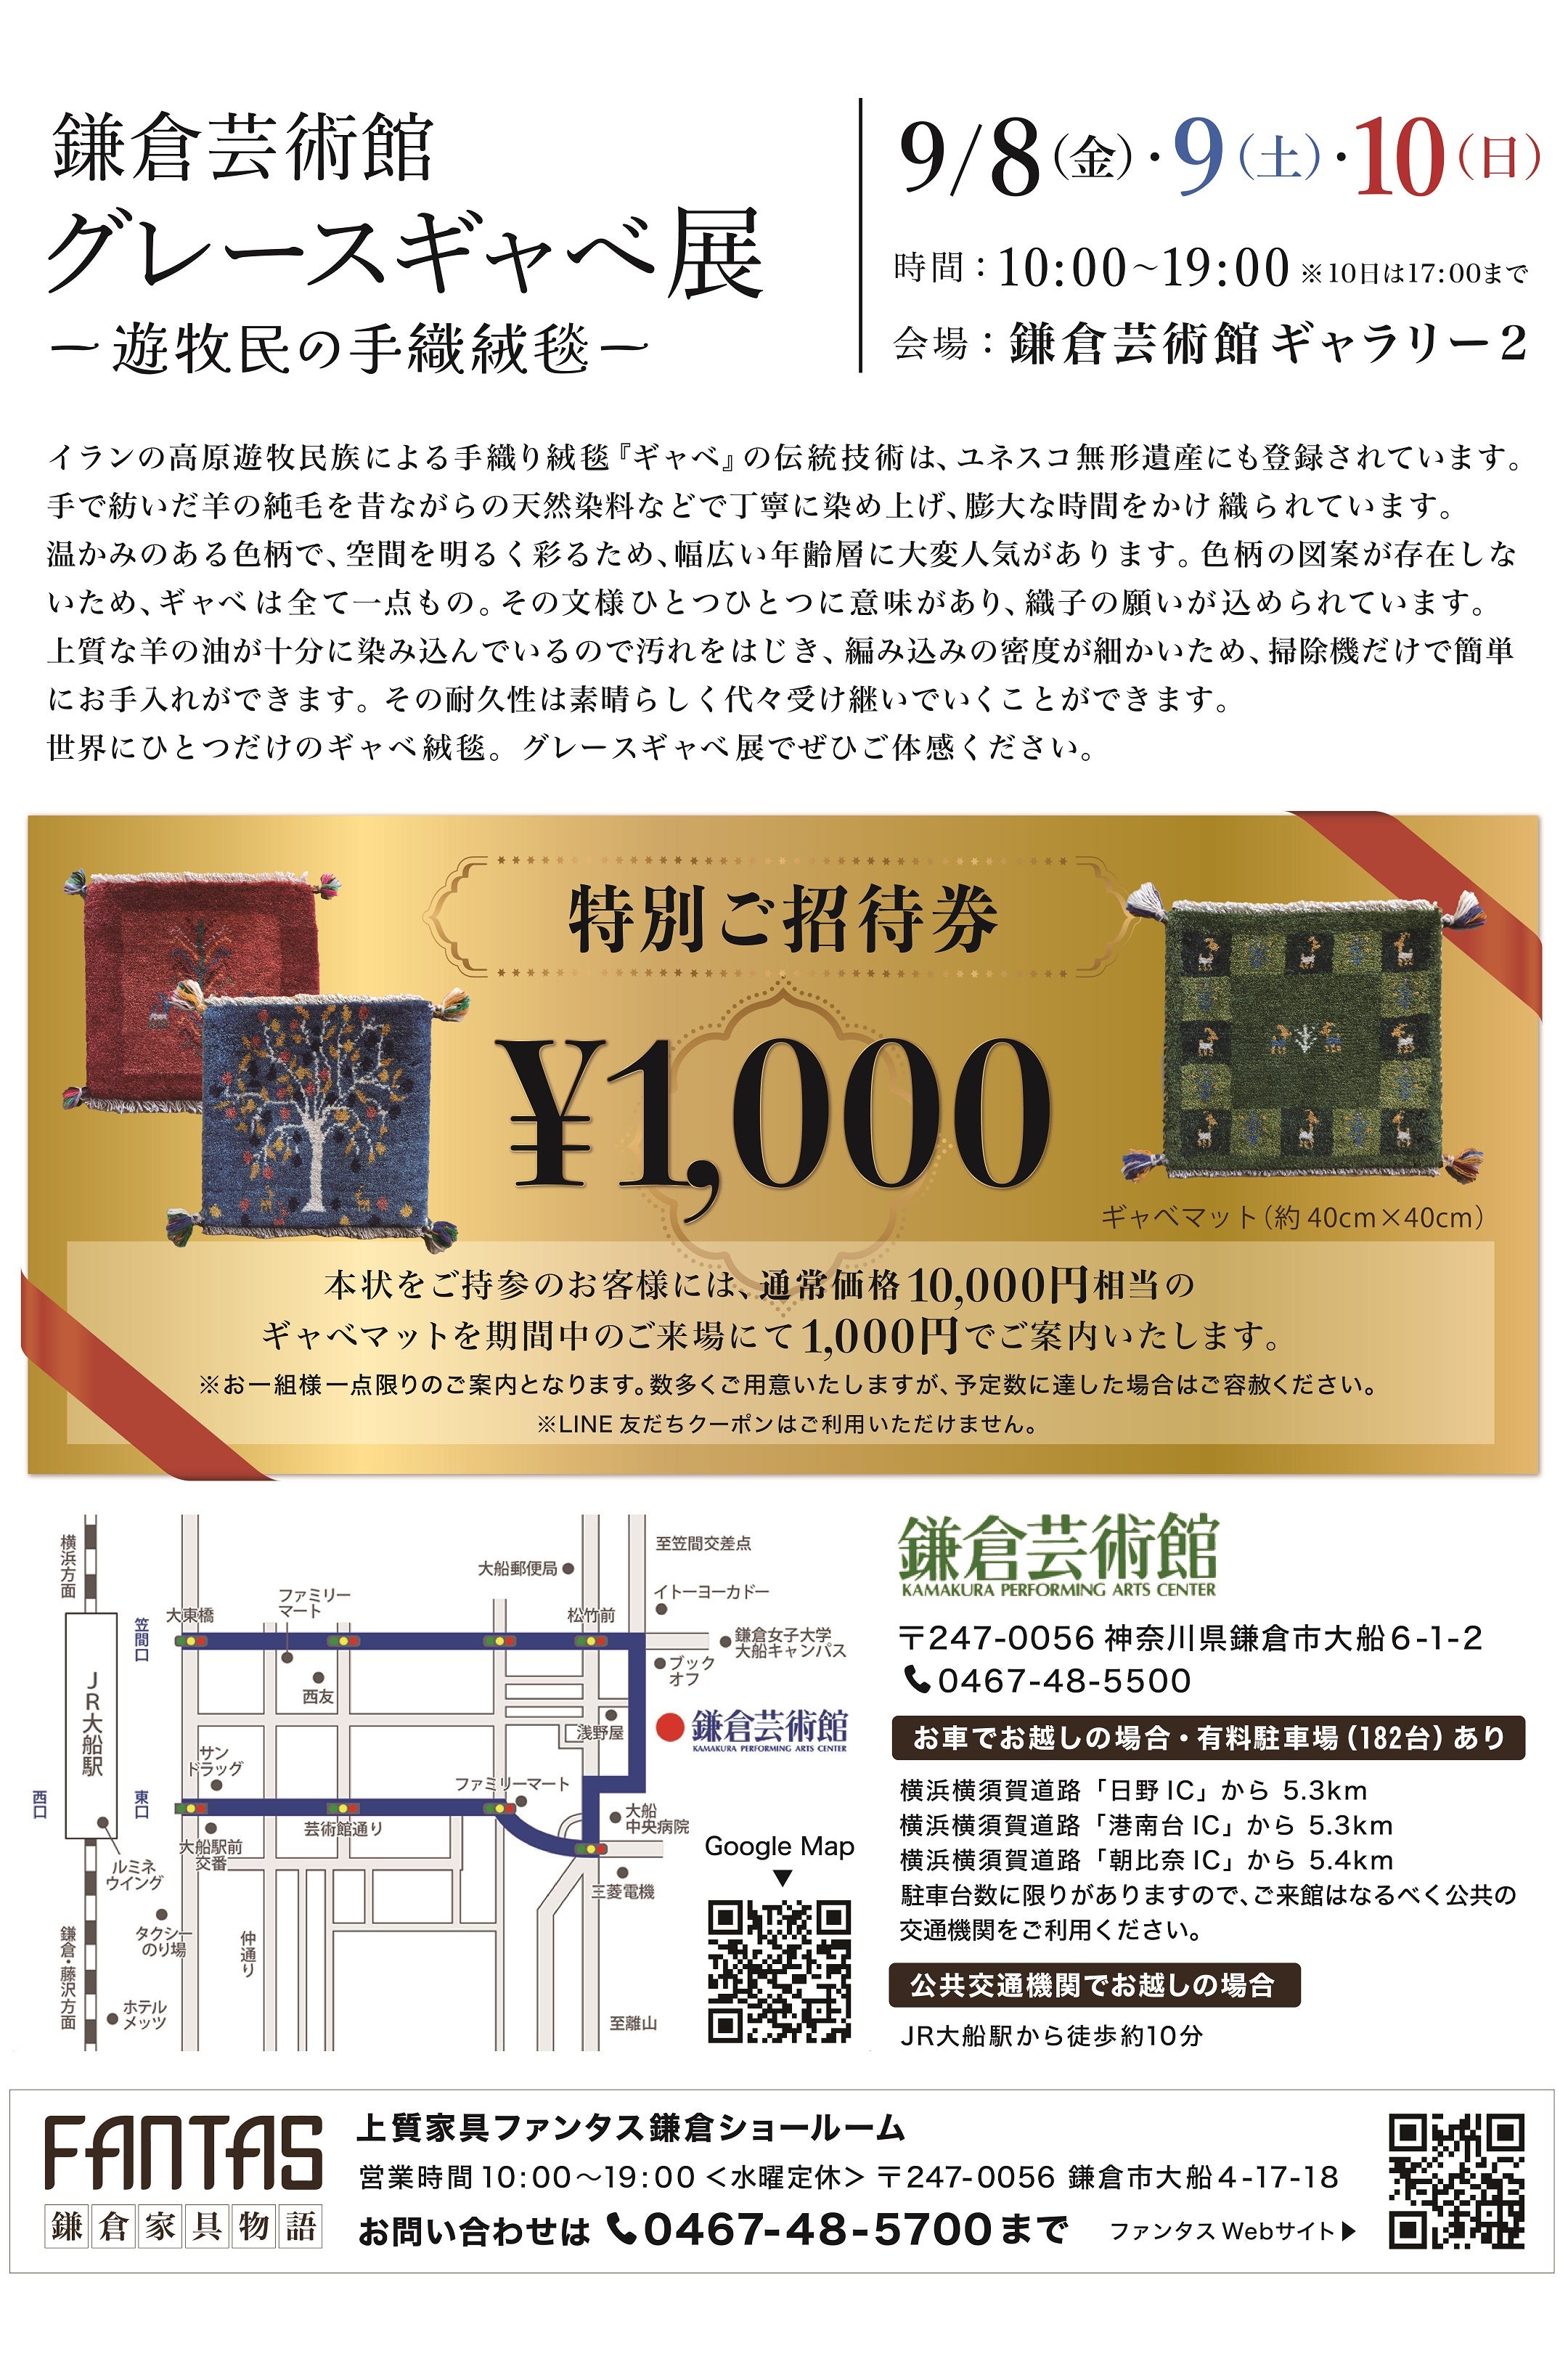 ファンタスへのご来店事前ご予約で、市価１万円のギャベを千円でご用意！